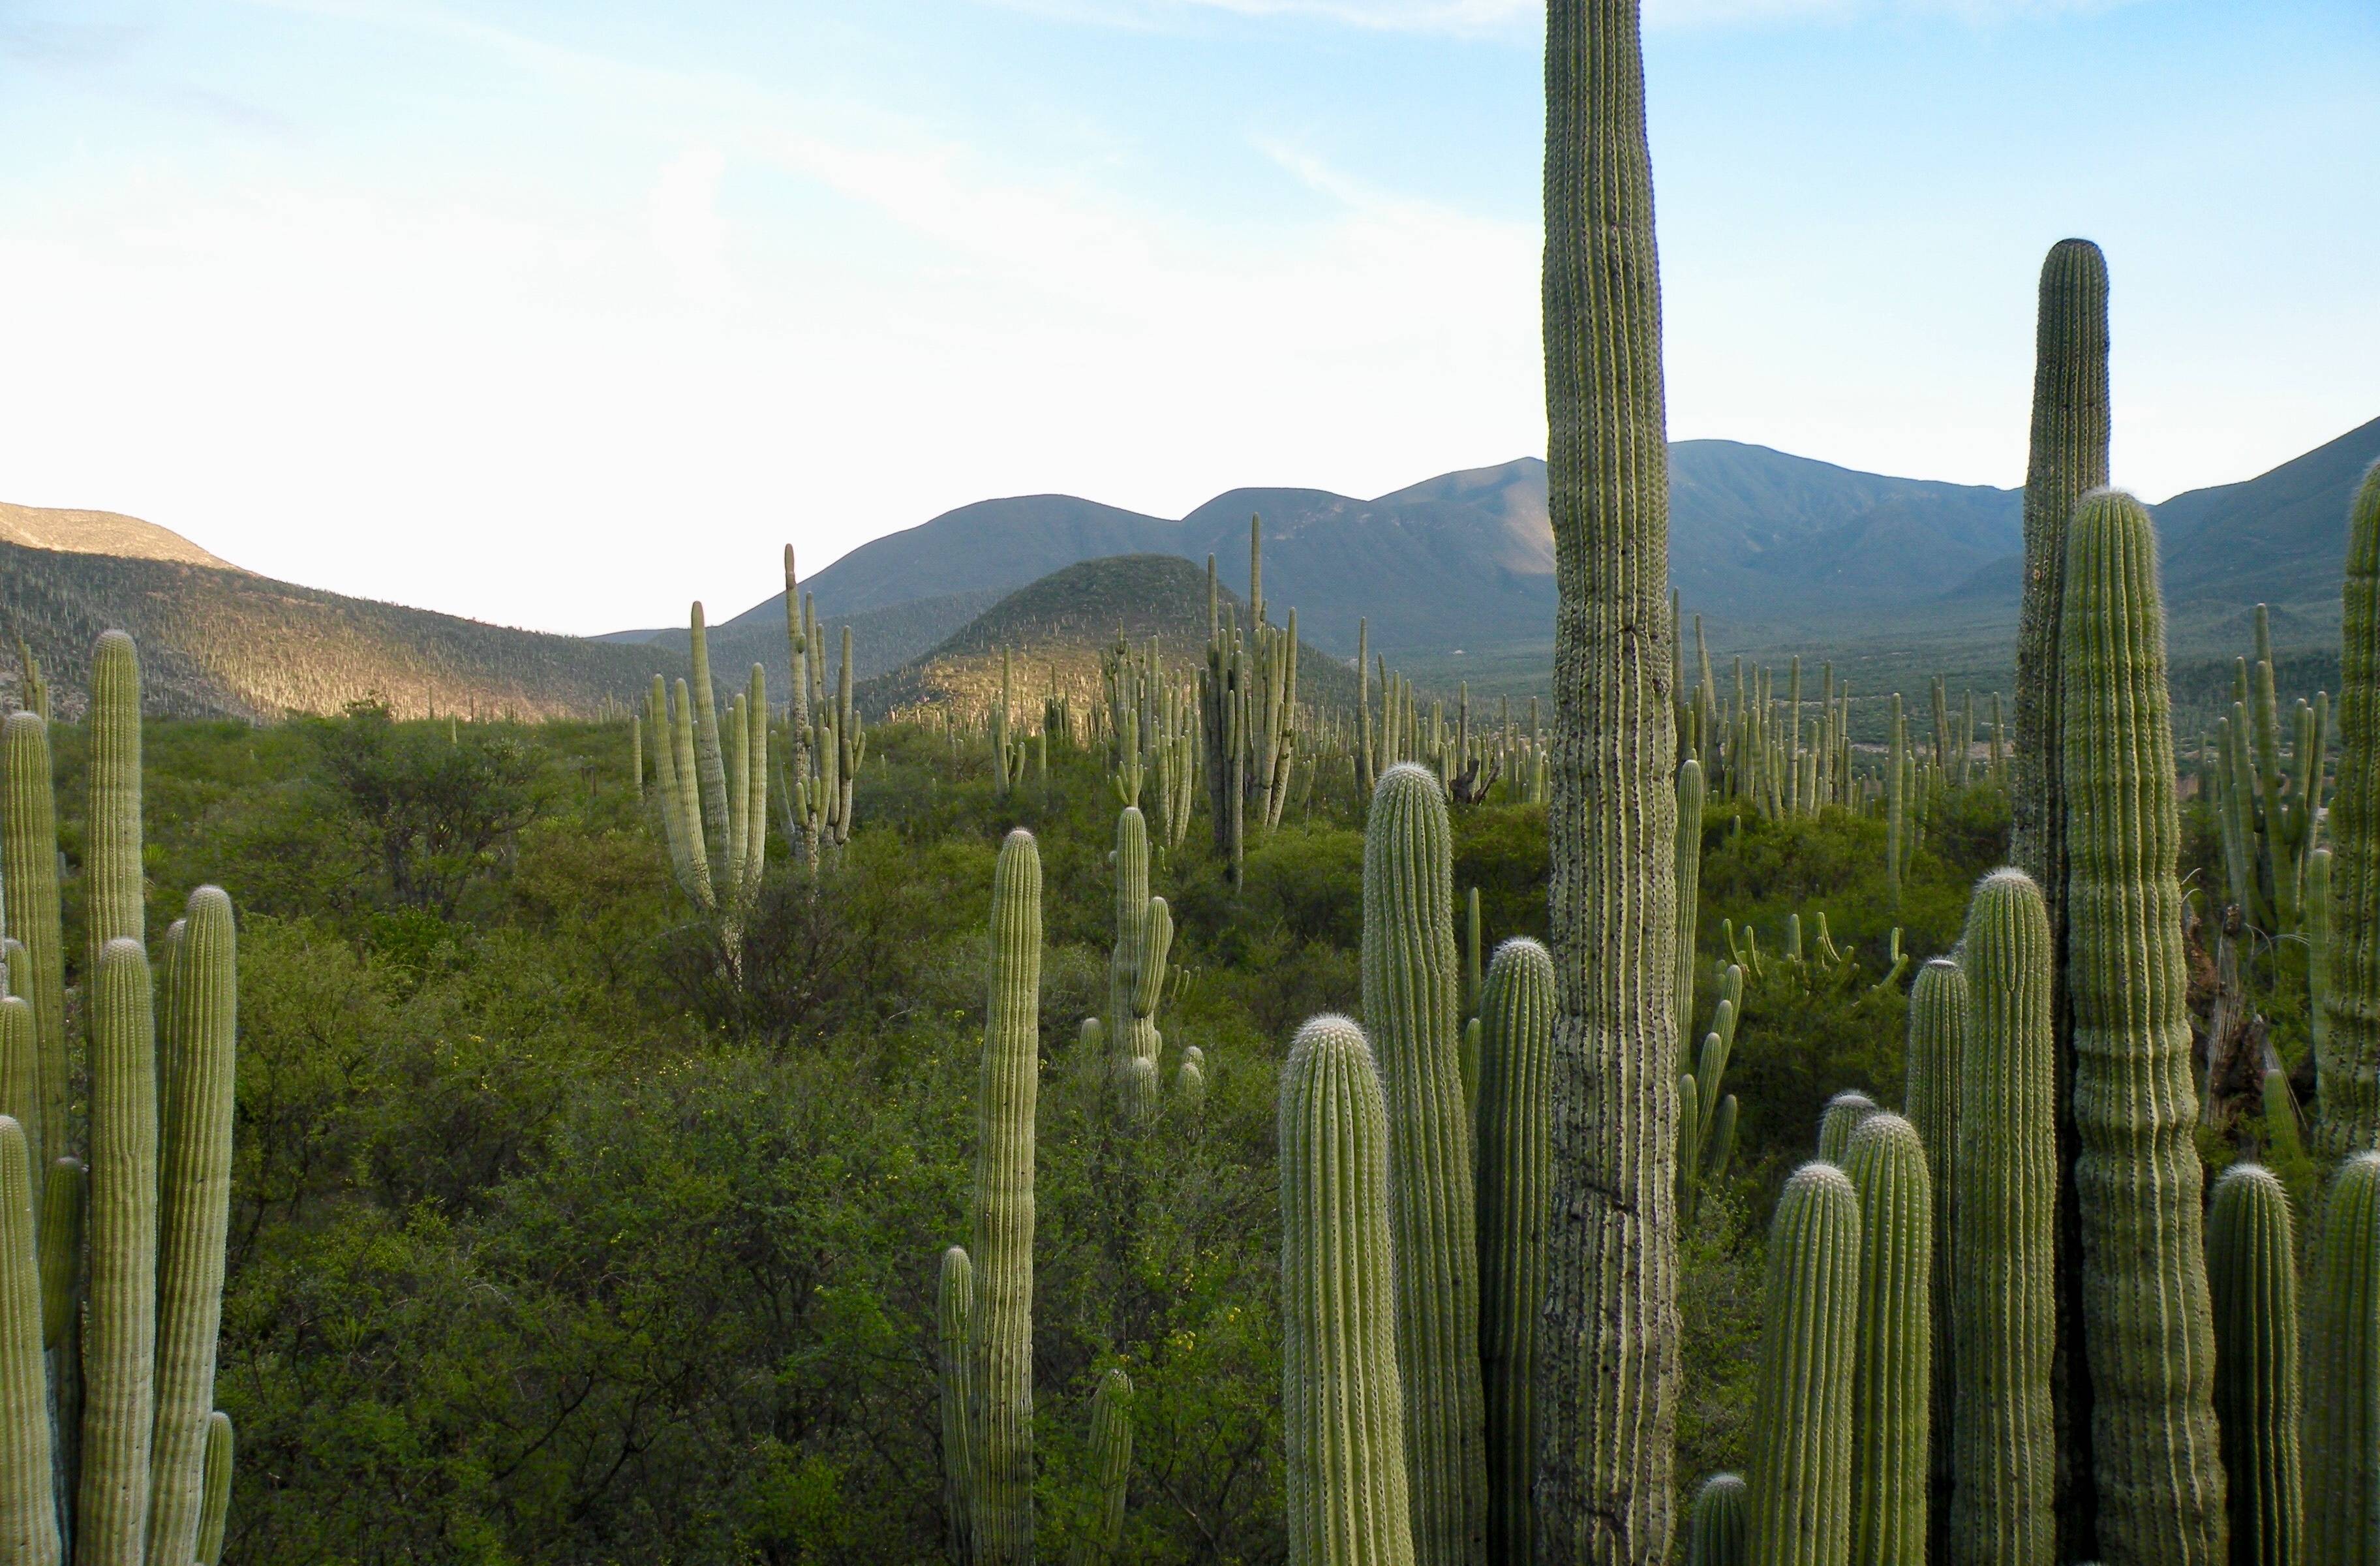 Arrivo nello stato di Oaxaca e camminata in una foresta di cactus